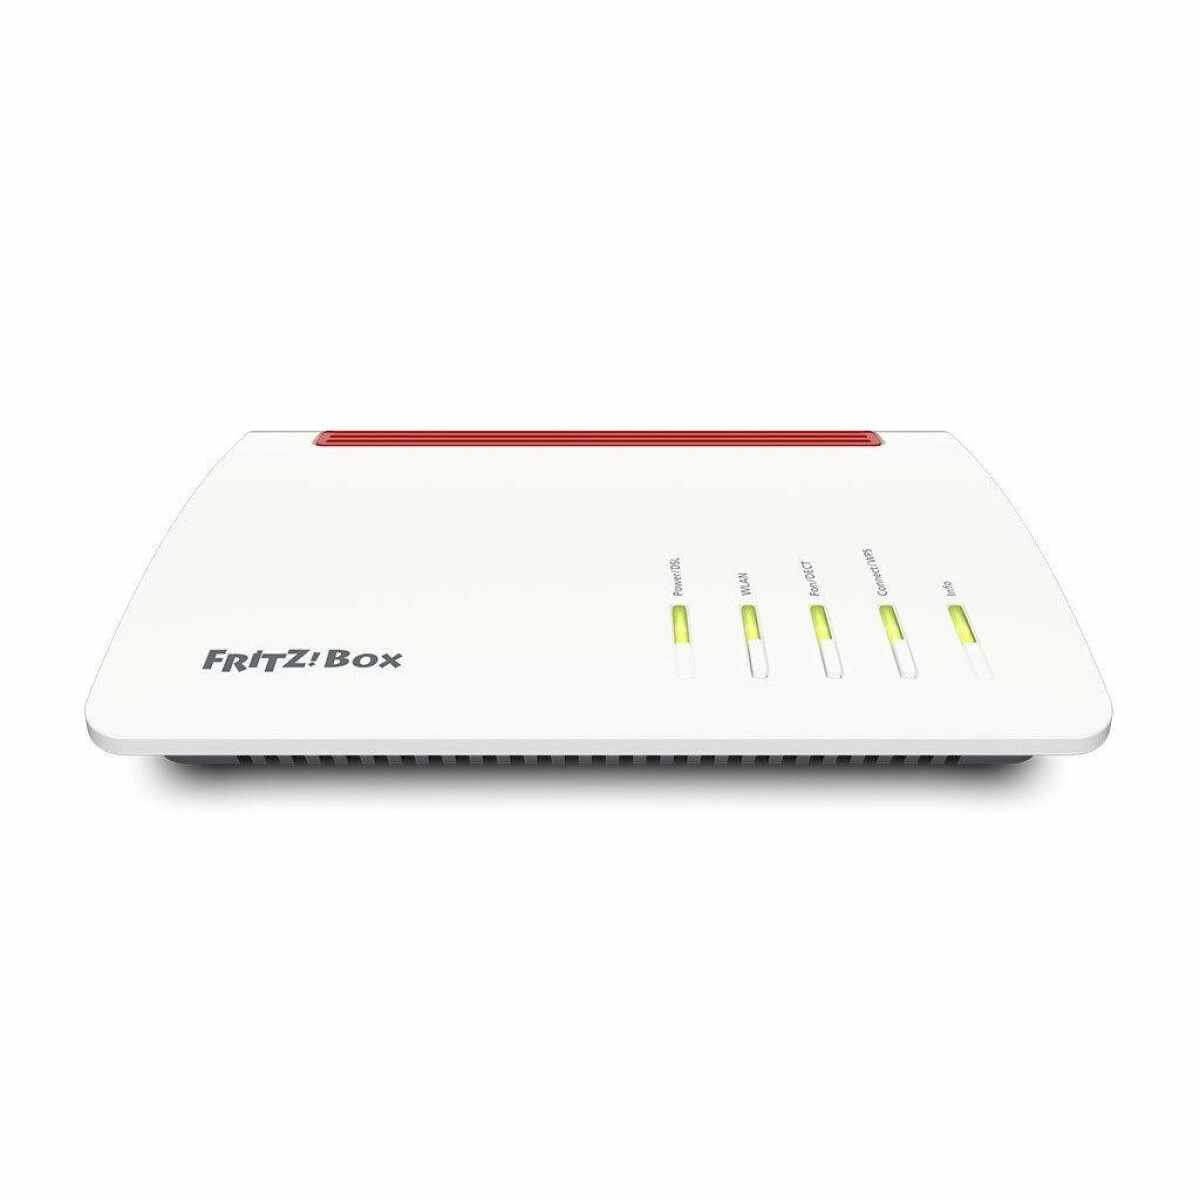 Router FritzBox 7530, versiune Internationala, 3G + 4G (LTE), 4 x Gigabit-Ethernet 10/100/1000 Base-T, Mesh